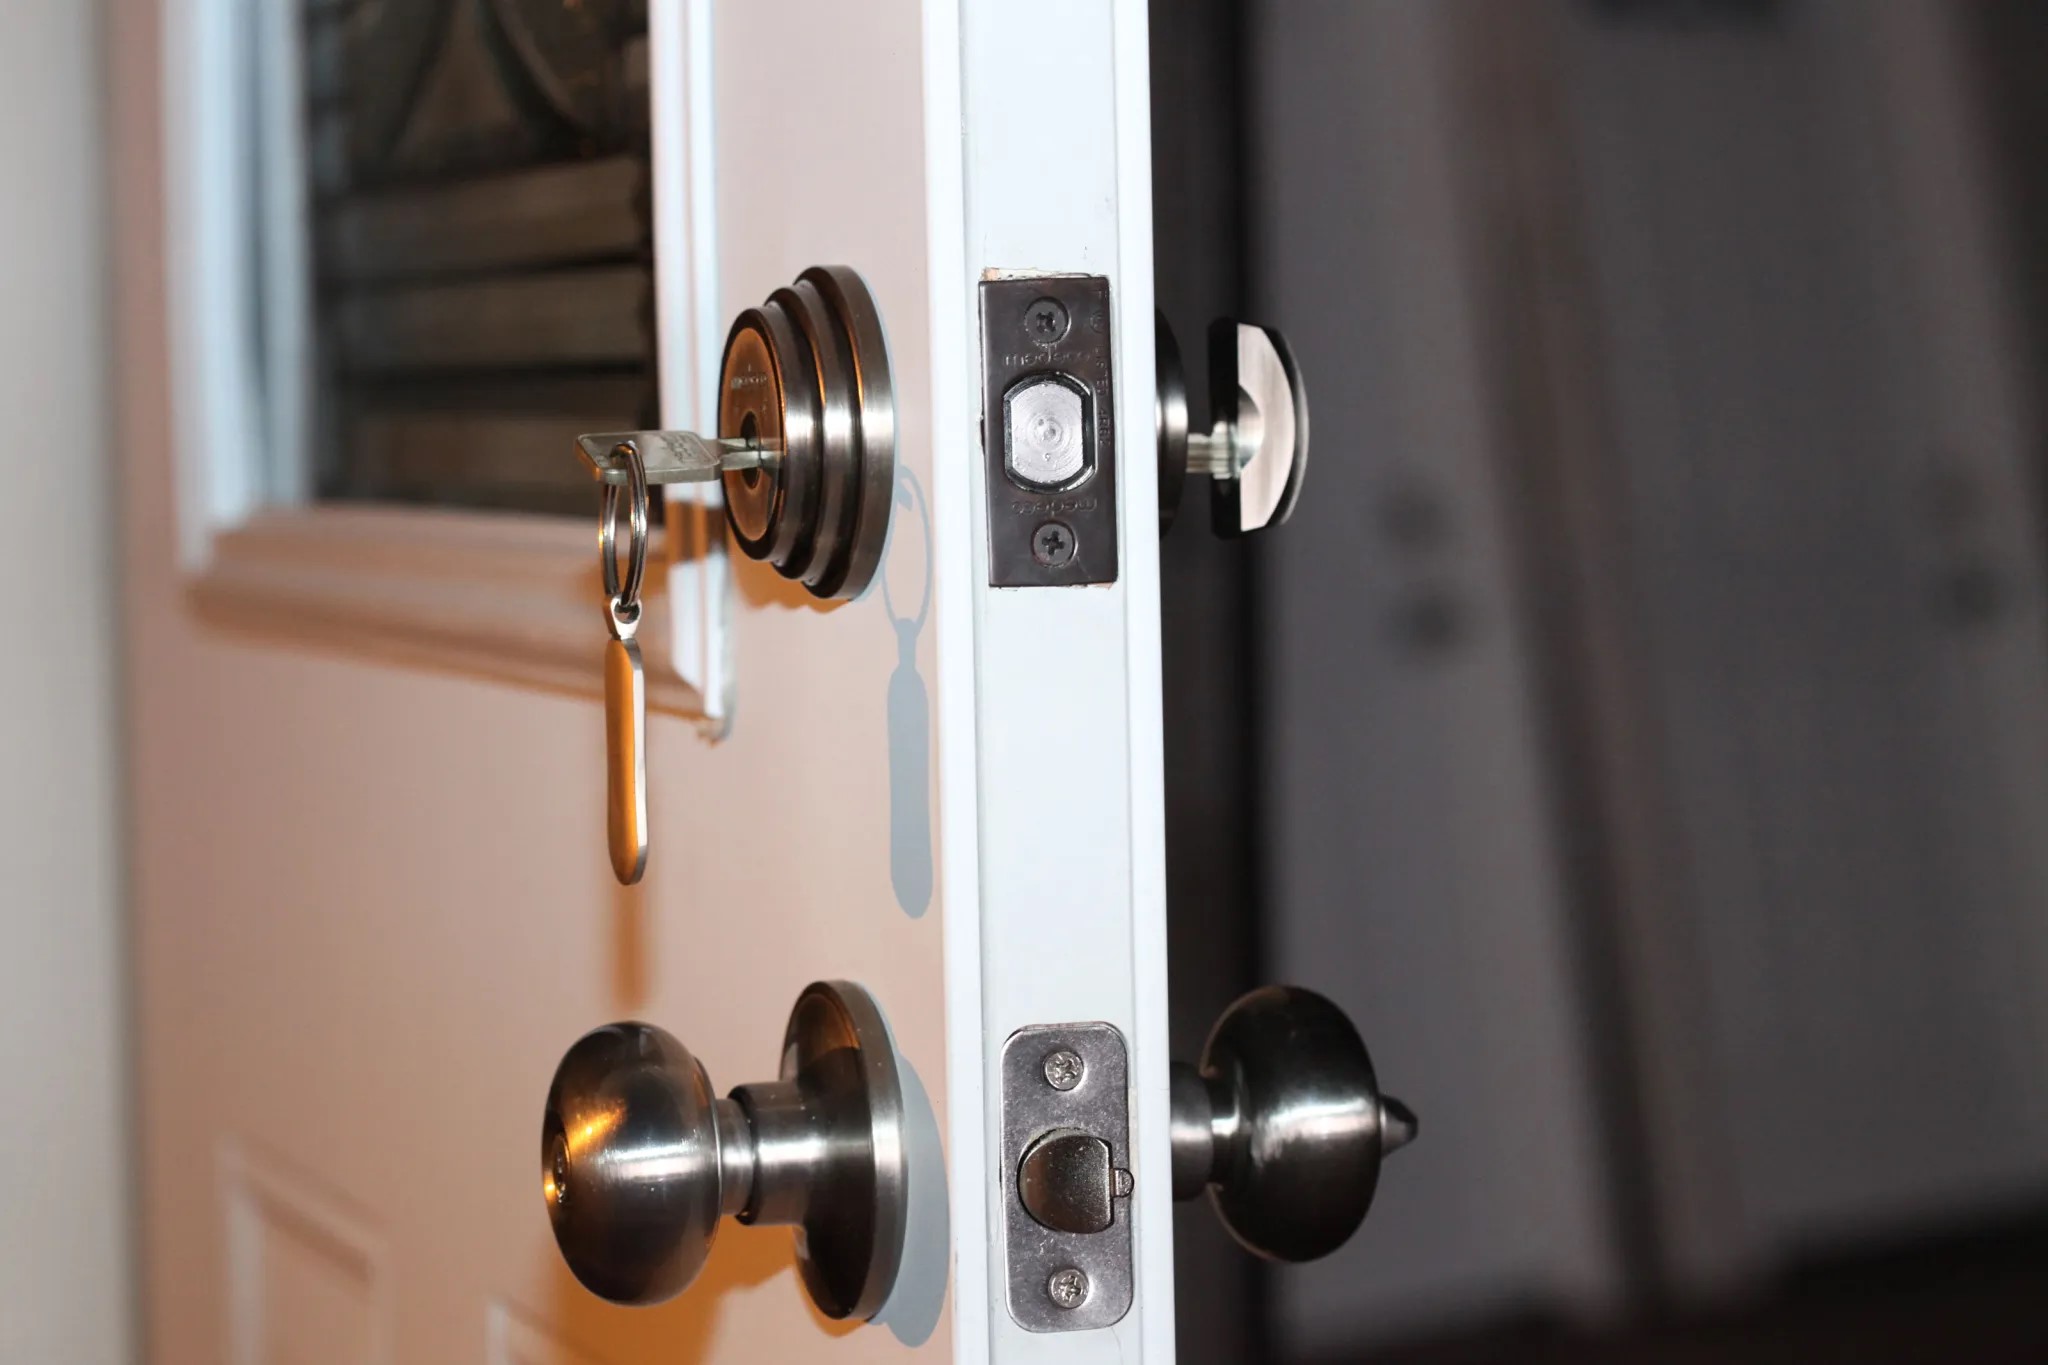 How To Unlock The Top Lock Of A Door